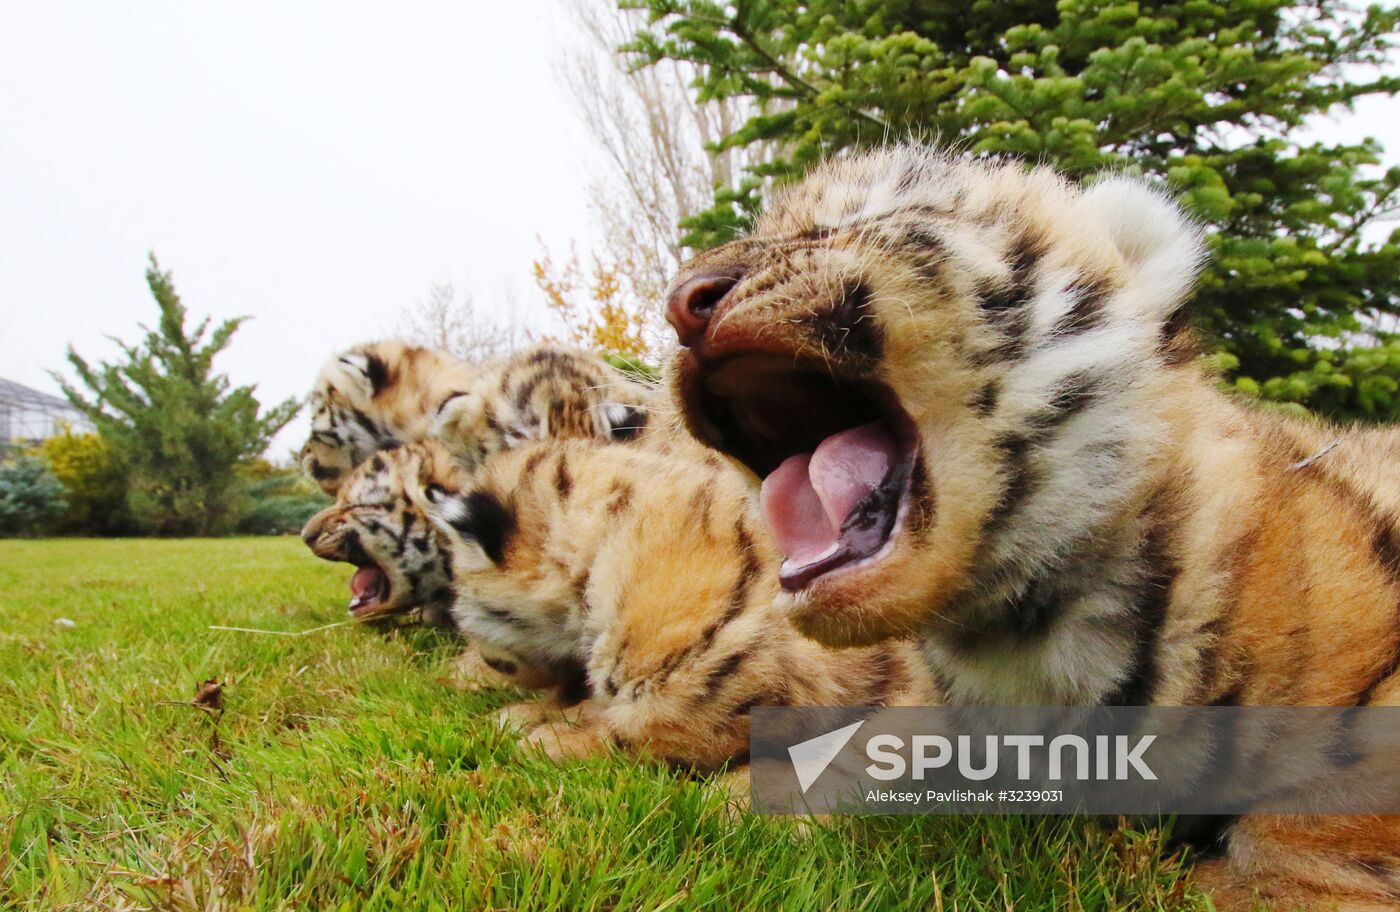 Six Siberian tigers cubs born at Taigan safri park